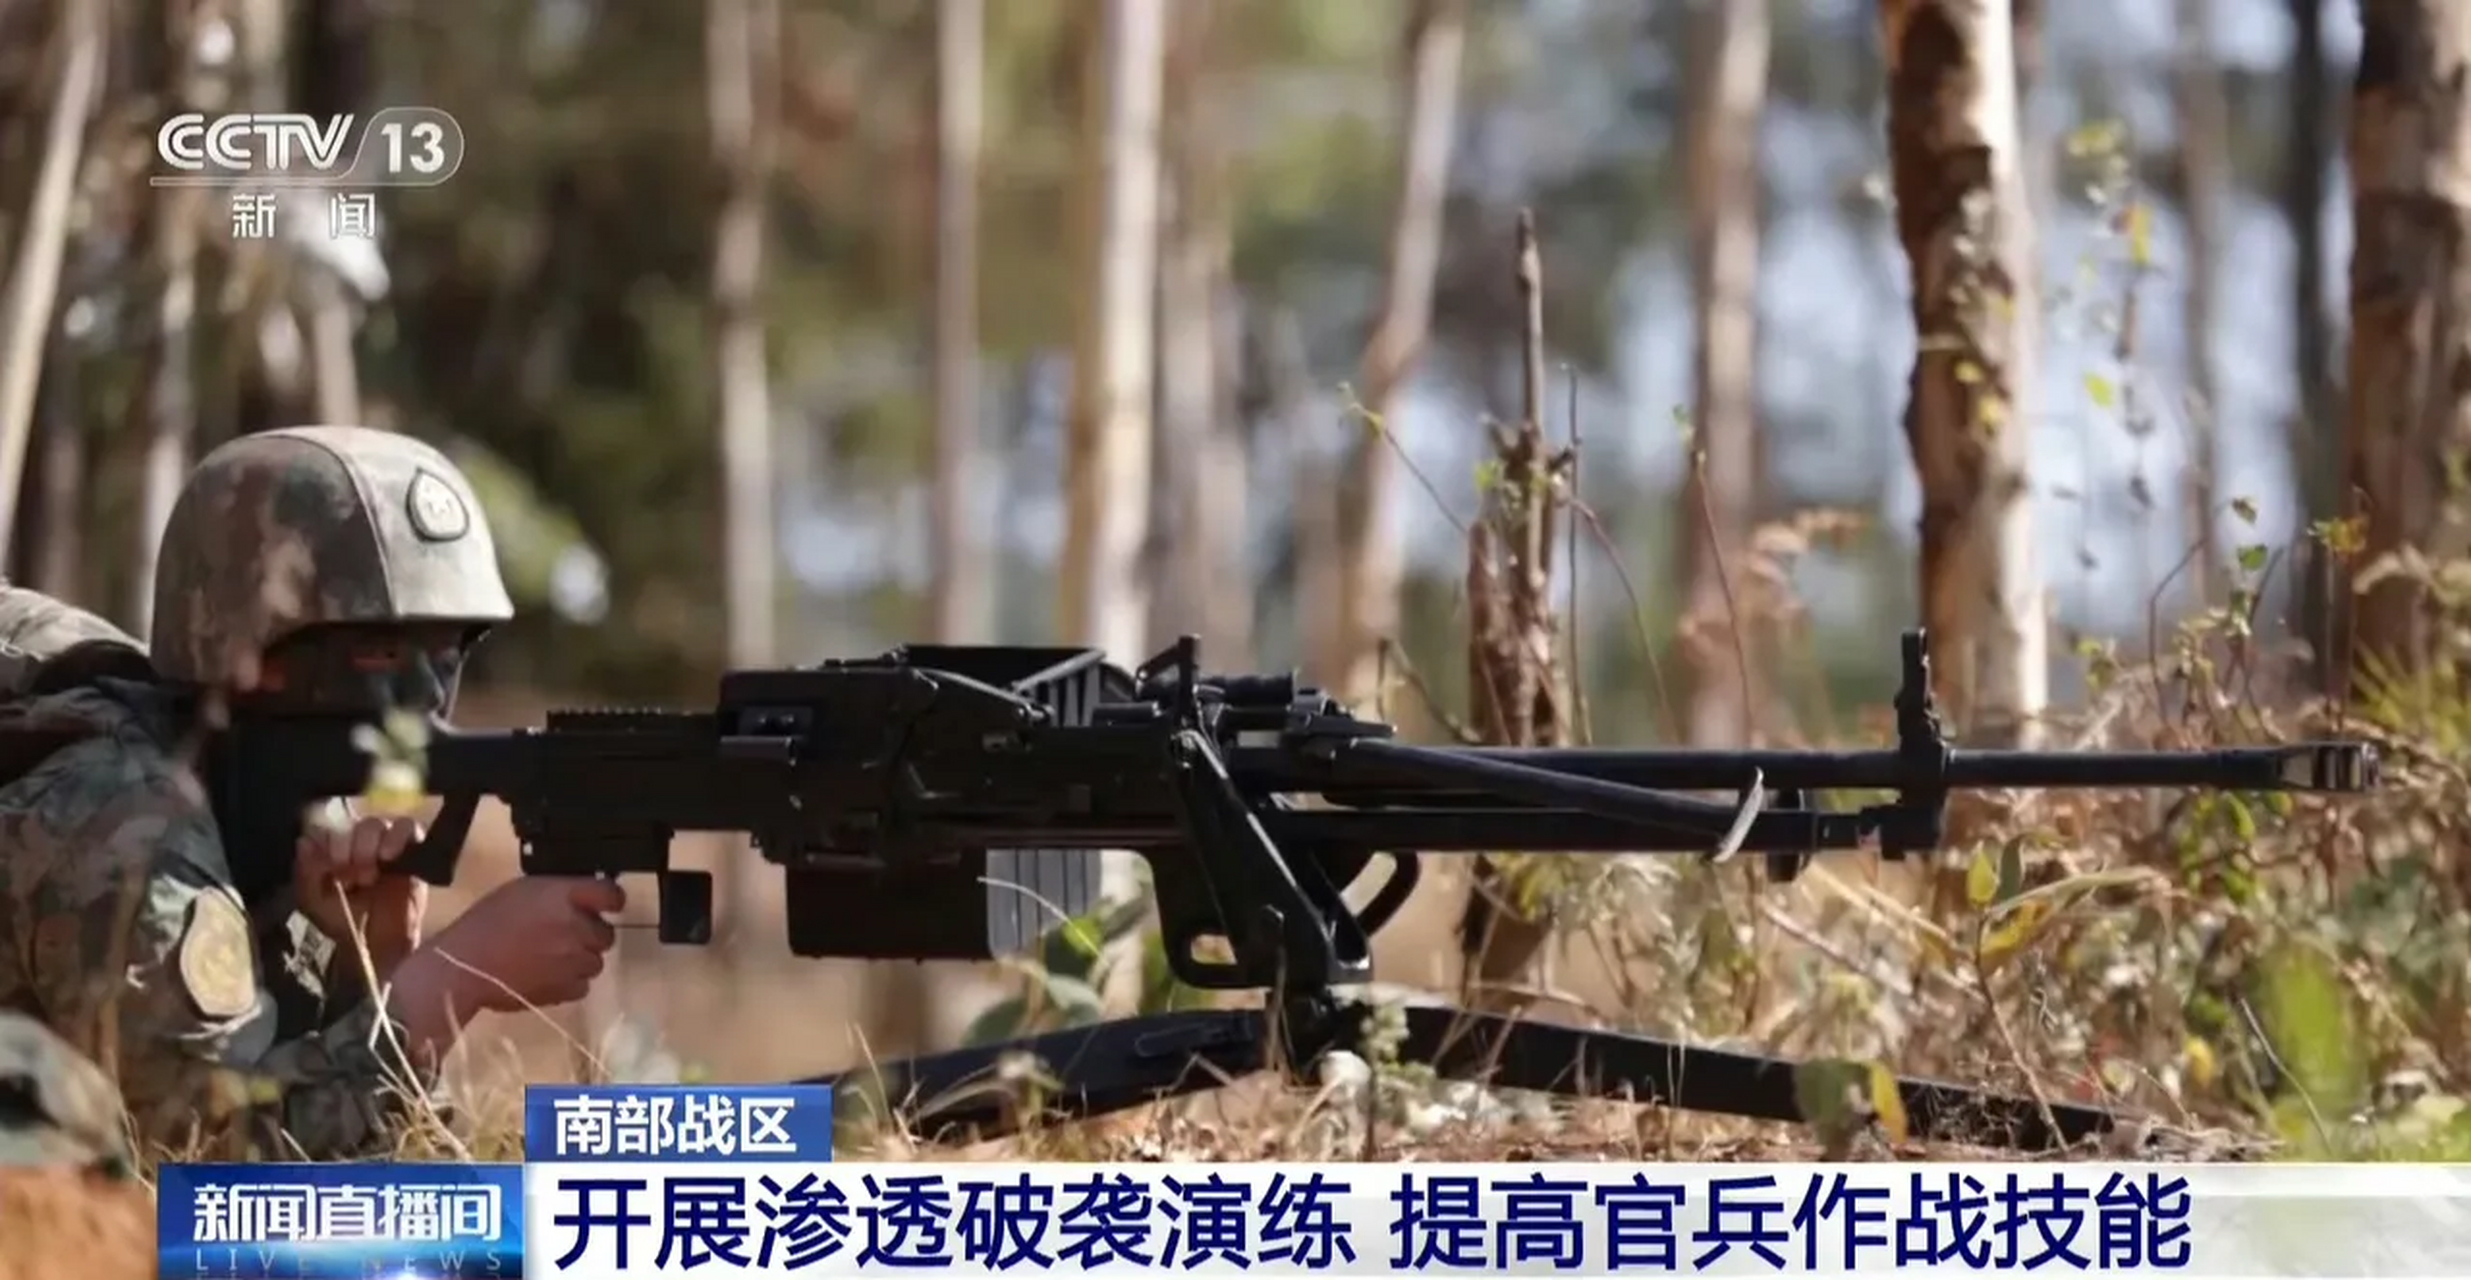 中国新型轻机枪图片